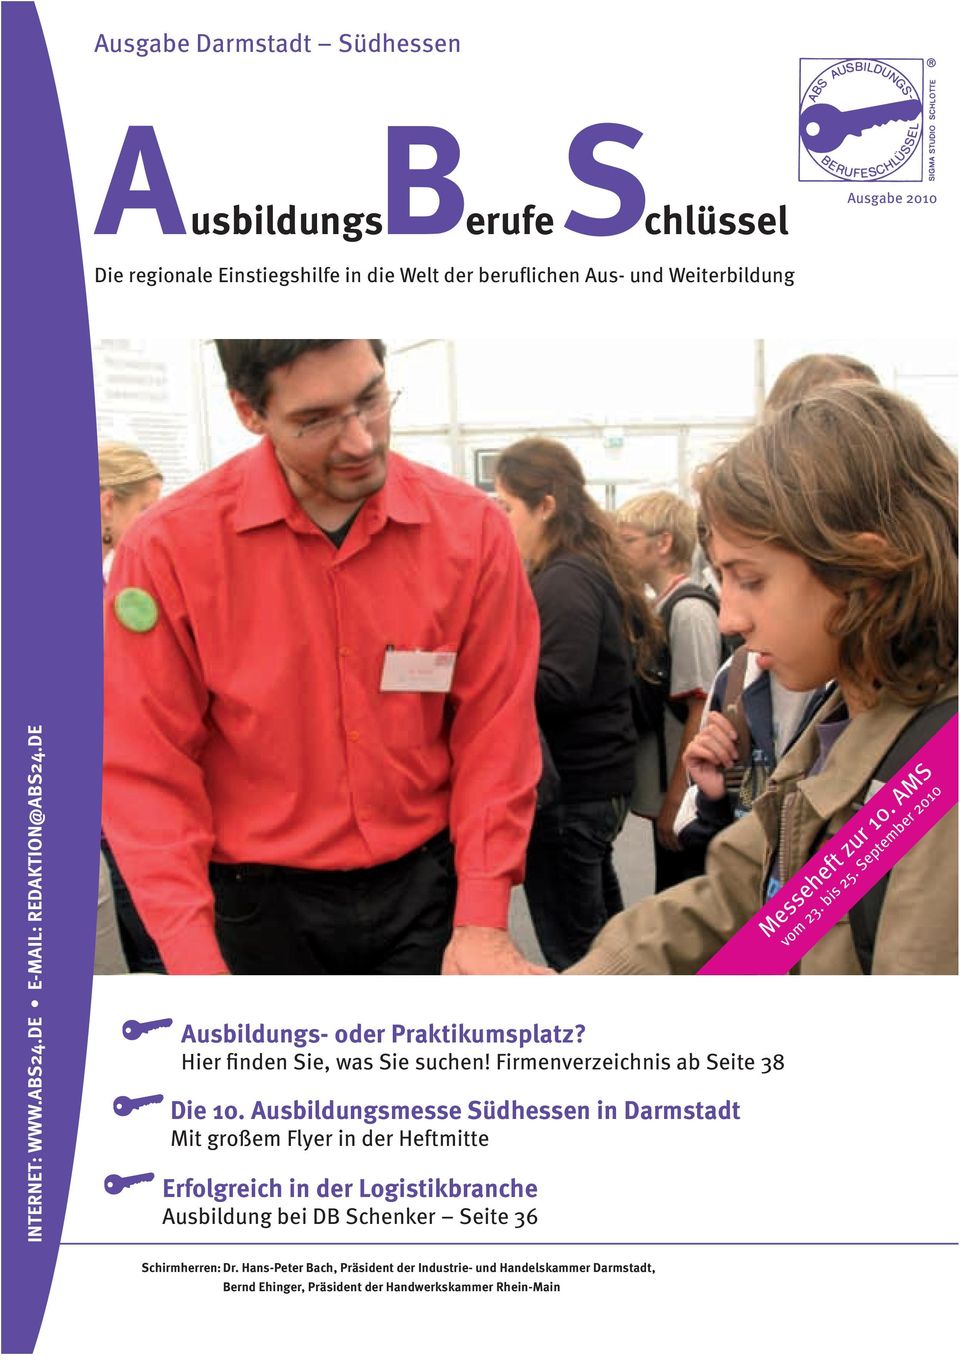 Ausbildungsmesse Südhessen in Darmstadt Mit großem Flyer in der Heftmitte Erfolgreich in der Logistikbranche Ausbildung bei DB Schenker Seite 36 Messeheft zur 10.